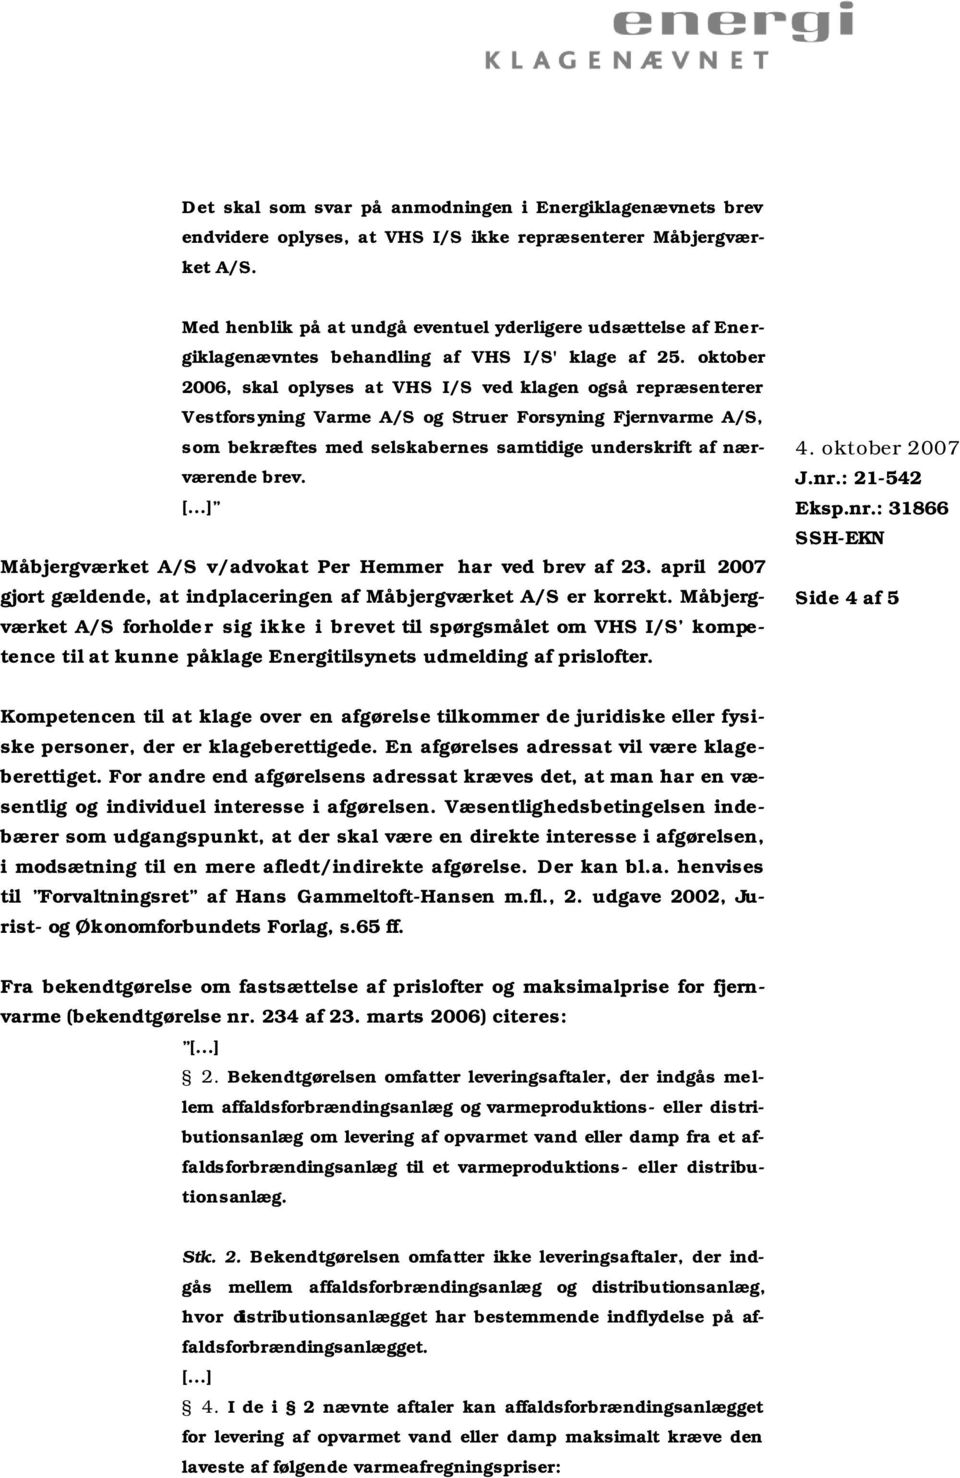 oktober 2006, skal oplyses at VHS I/S ved klagen også repræsenterer Vestforsyning Varme A/S og Struer Forsyning Fjernvarme A/S, som bekræftes med selskabernes samtidige underskrift af nærværende brev.